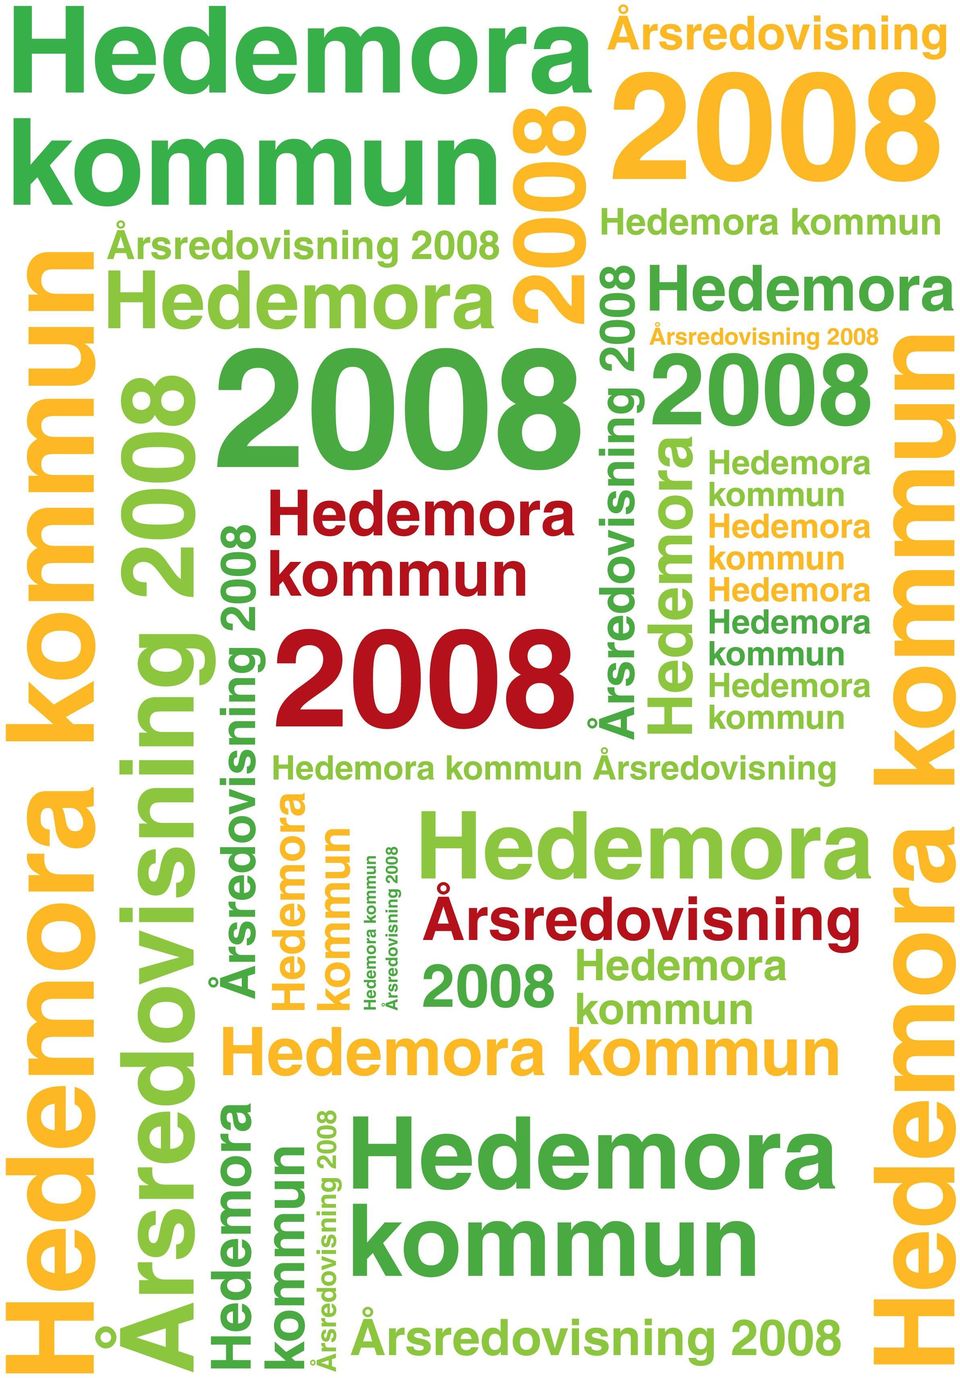 Hedemora Hedemora kommun Hedemora kommun Hedemora kommun Hedemora Hedemora kommun Hedemora kommun 2008 Hedemora kommun Årsredovisning